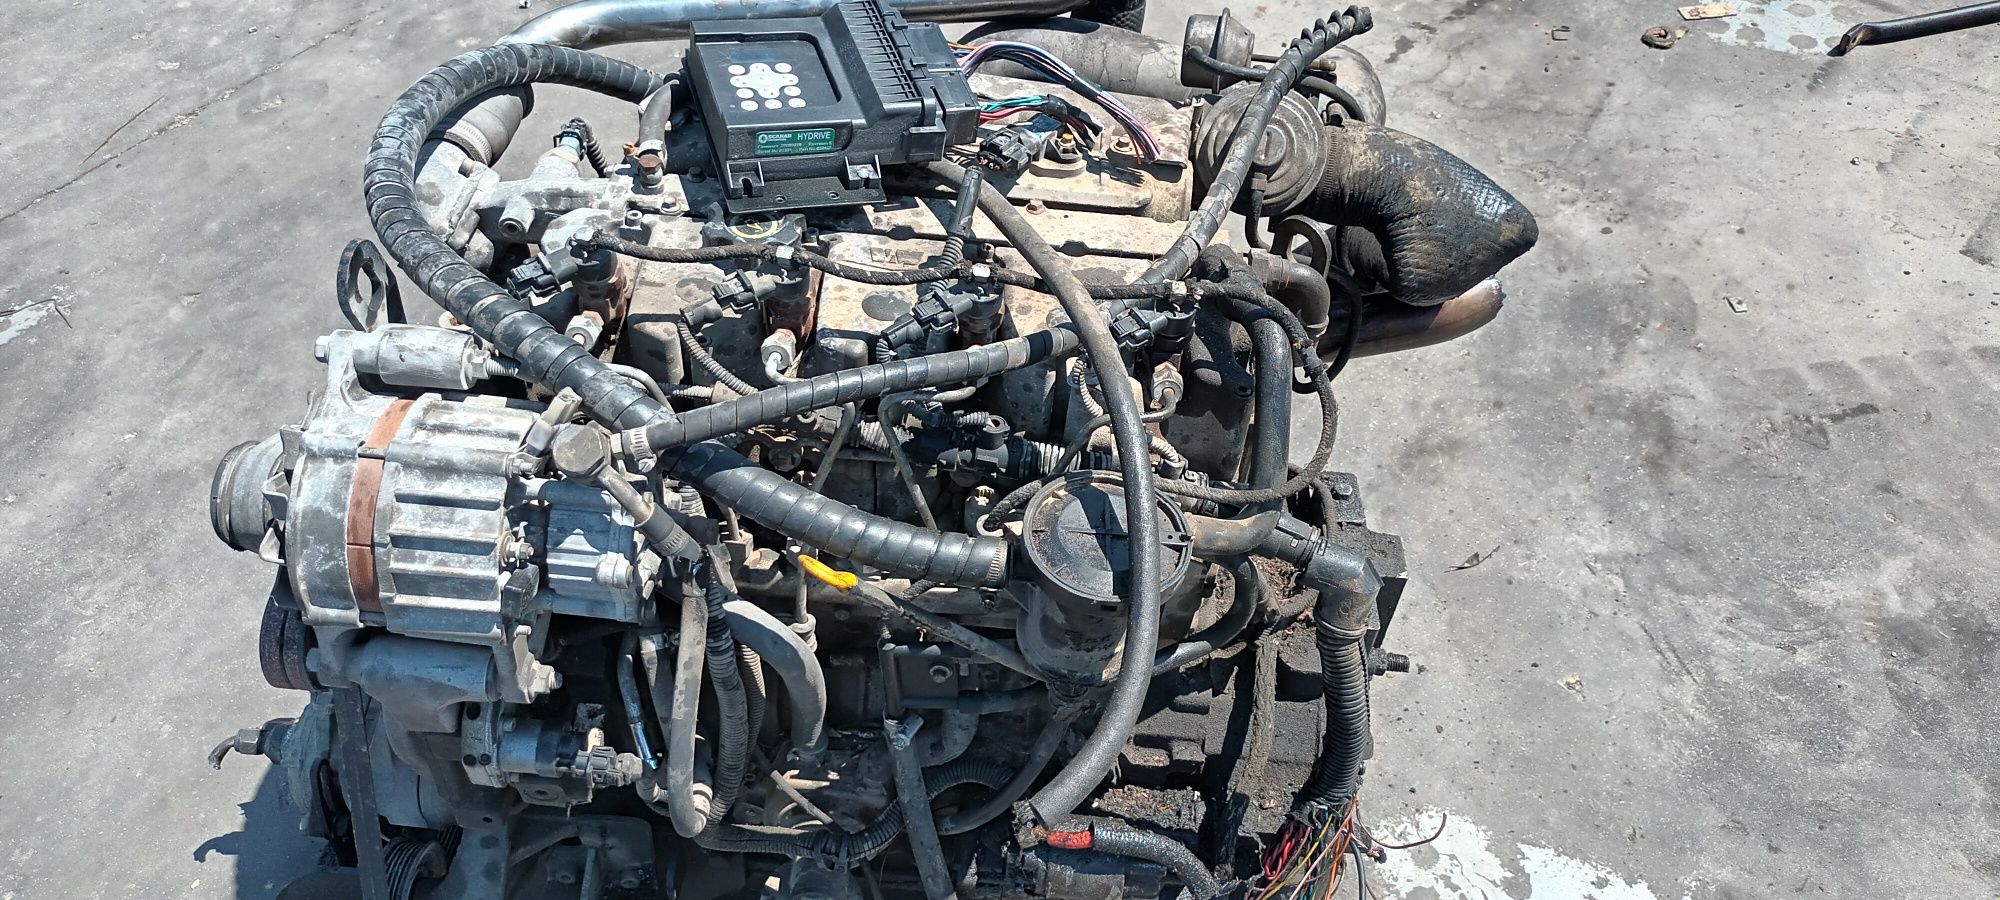 Motor VM r754 arrefecimento